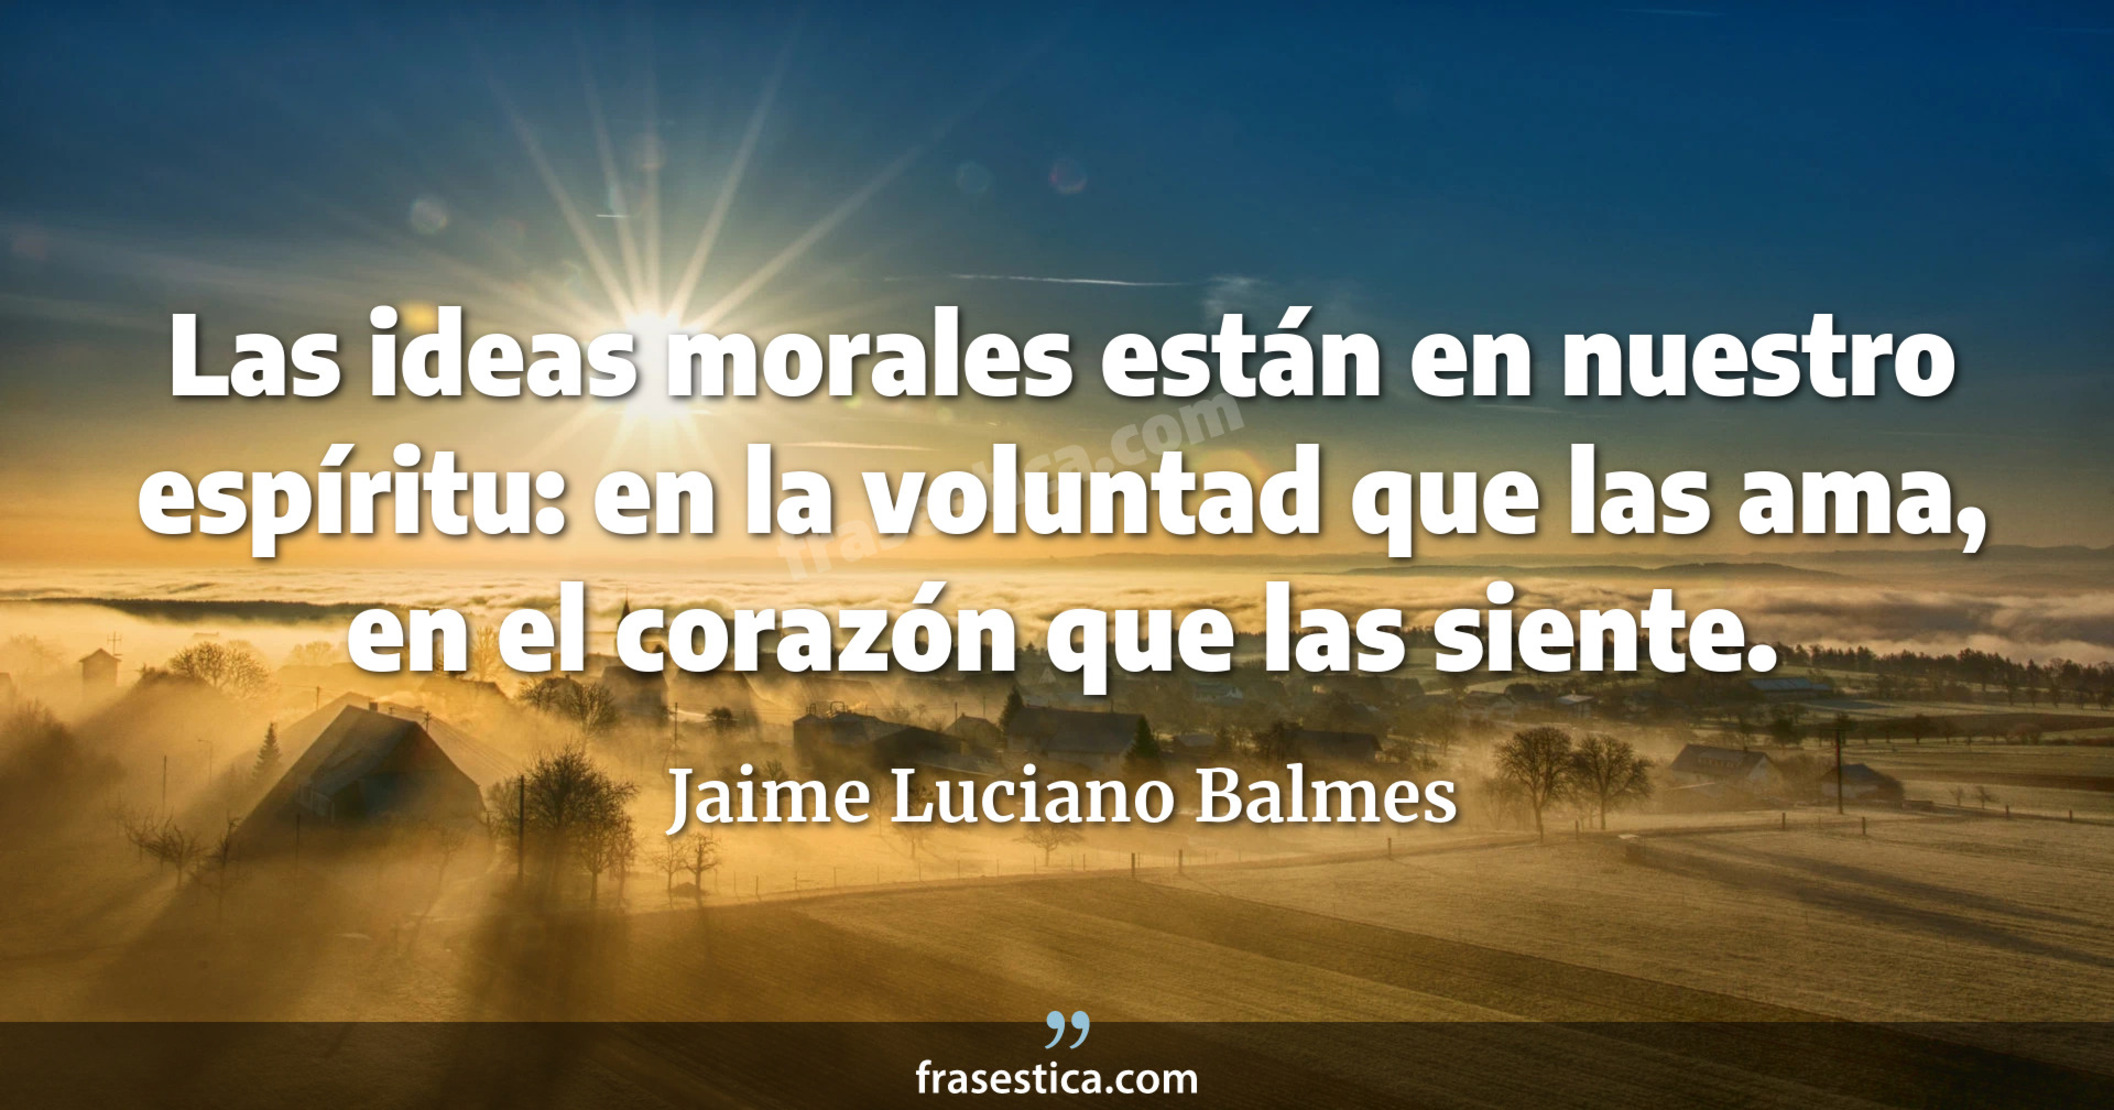 Las ideas morales están en nuestro espíritu: en la voluntad que las ama, en el corazón que las siente. - Jaime Luciano Balmes